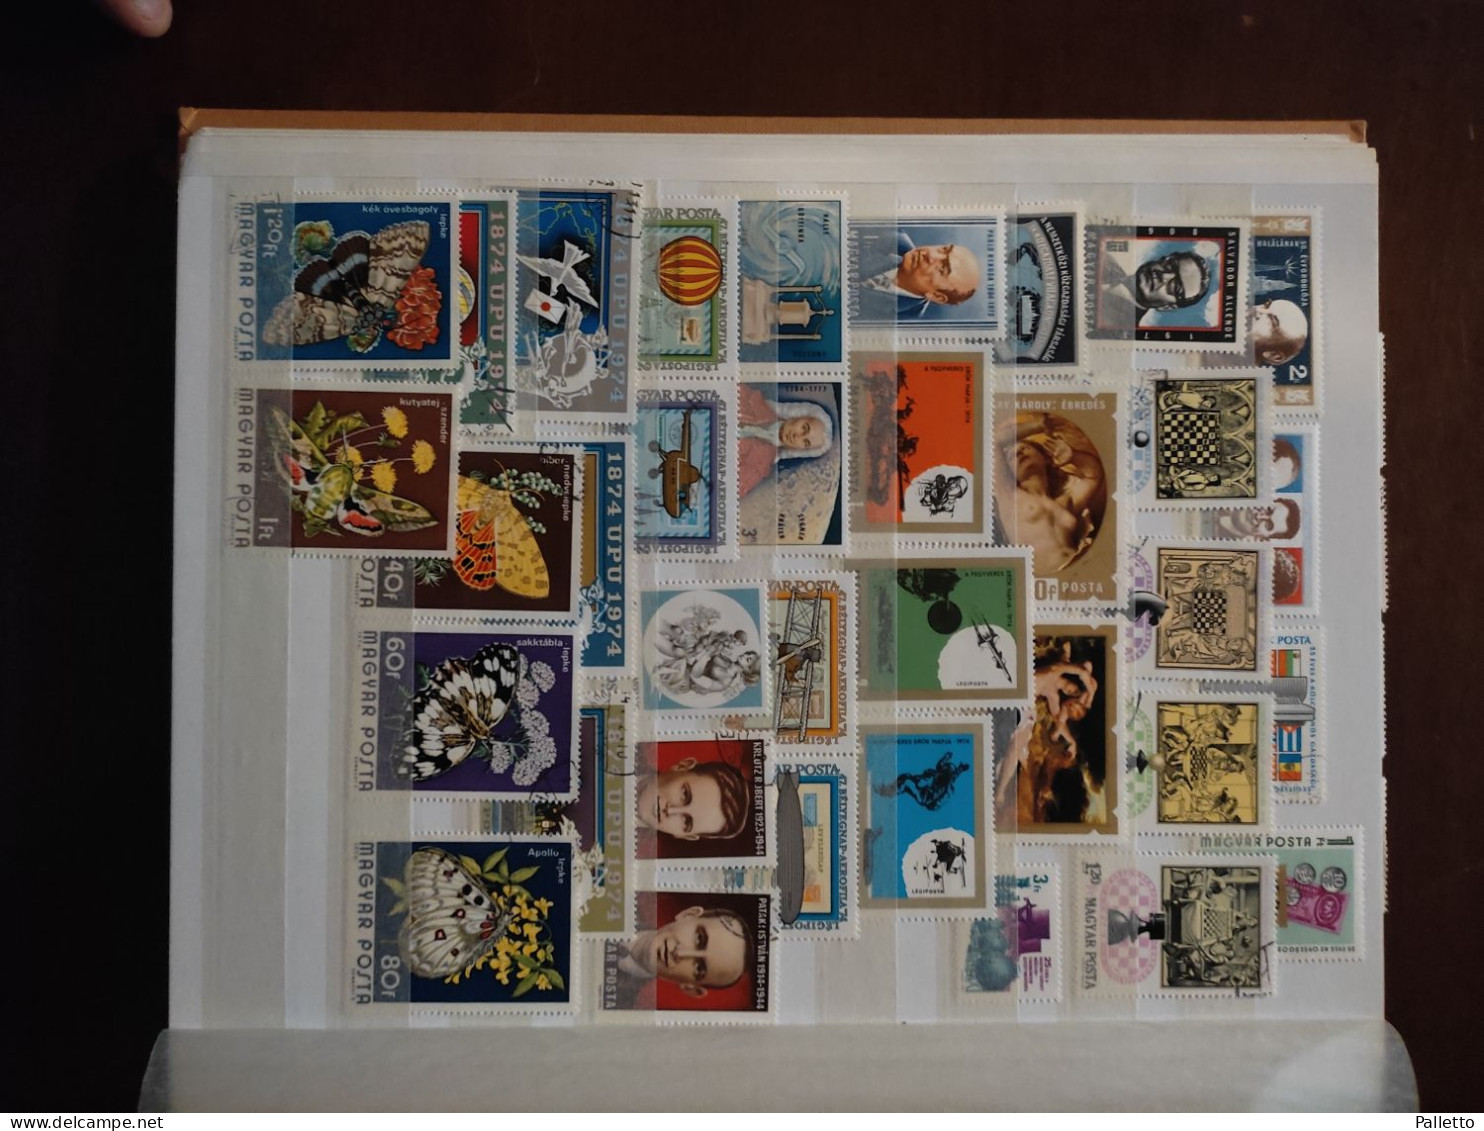 Francobolli di Ungheria anni 60-80 nuovi ed usati compreso raccoglitore 32 facciate in ottimo stato